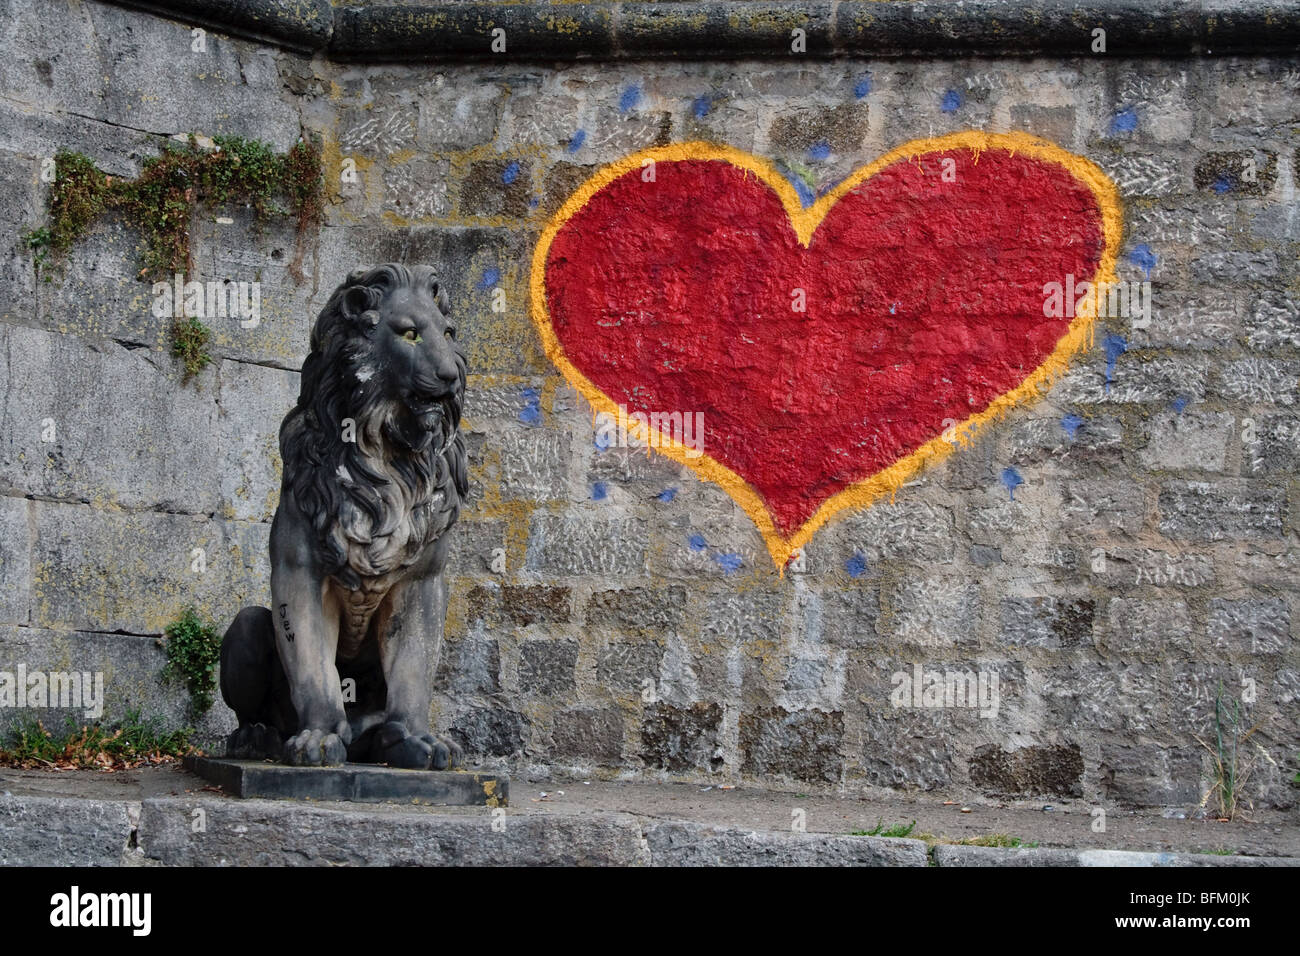 Cuore di leone - cuore rosso Graffiti e leone di pietra, Wurzberg Germania Foto Stock